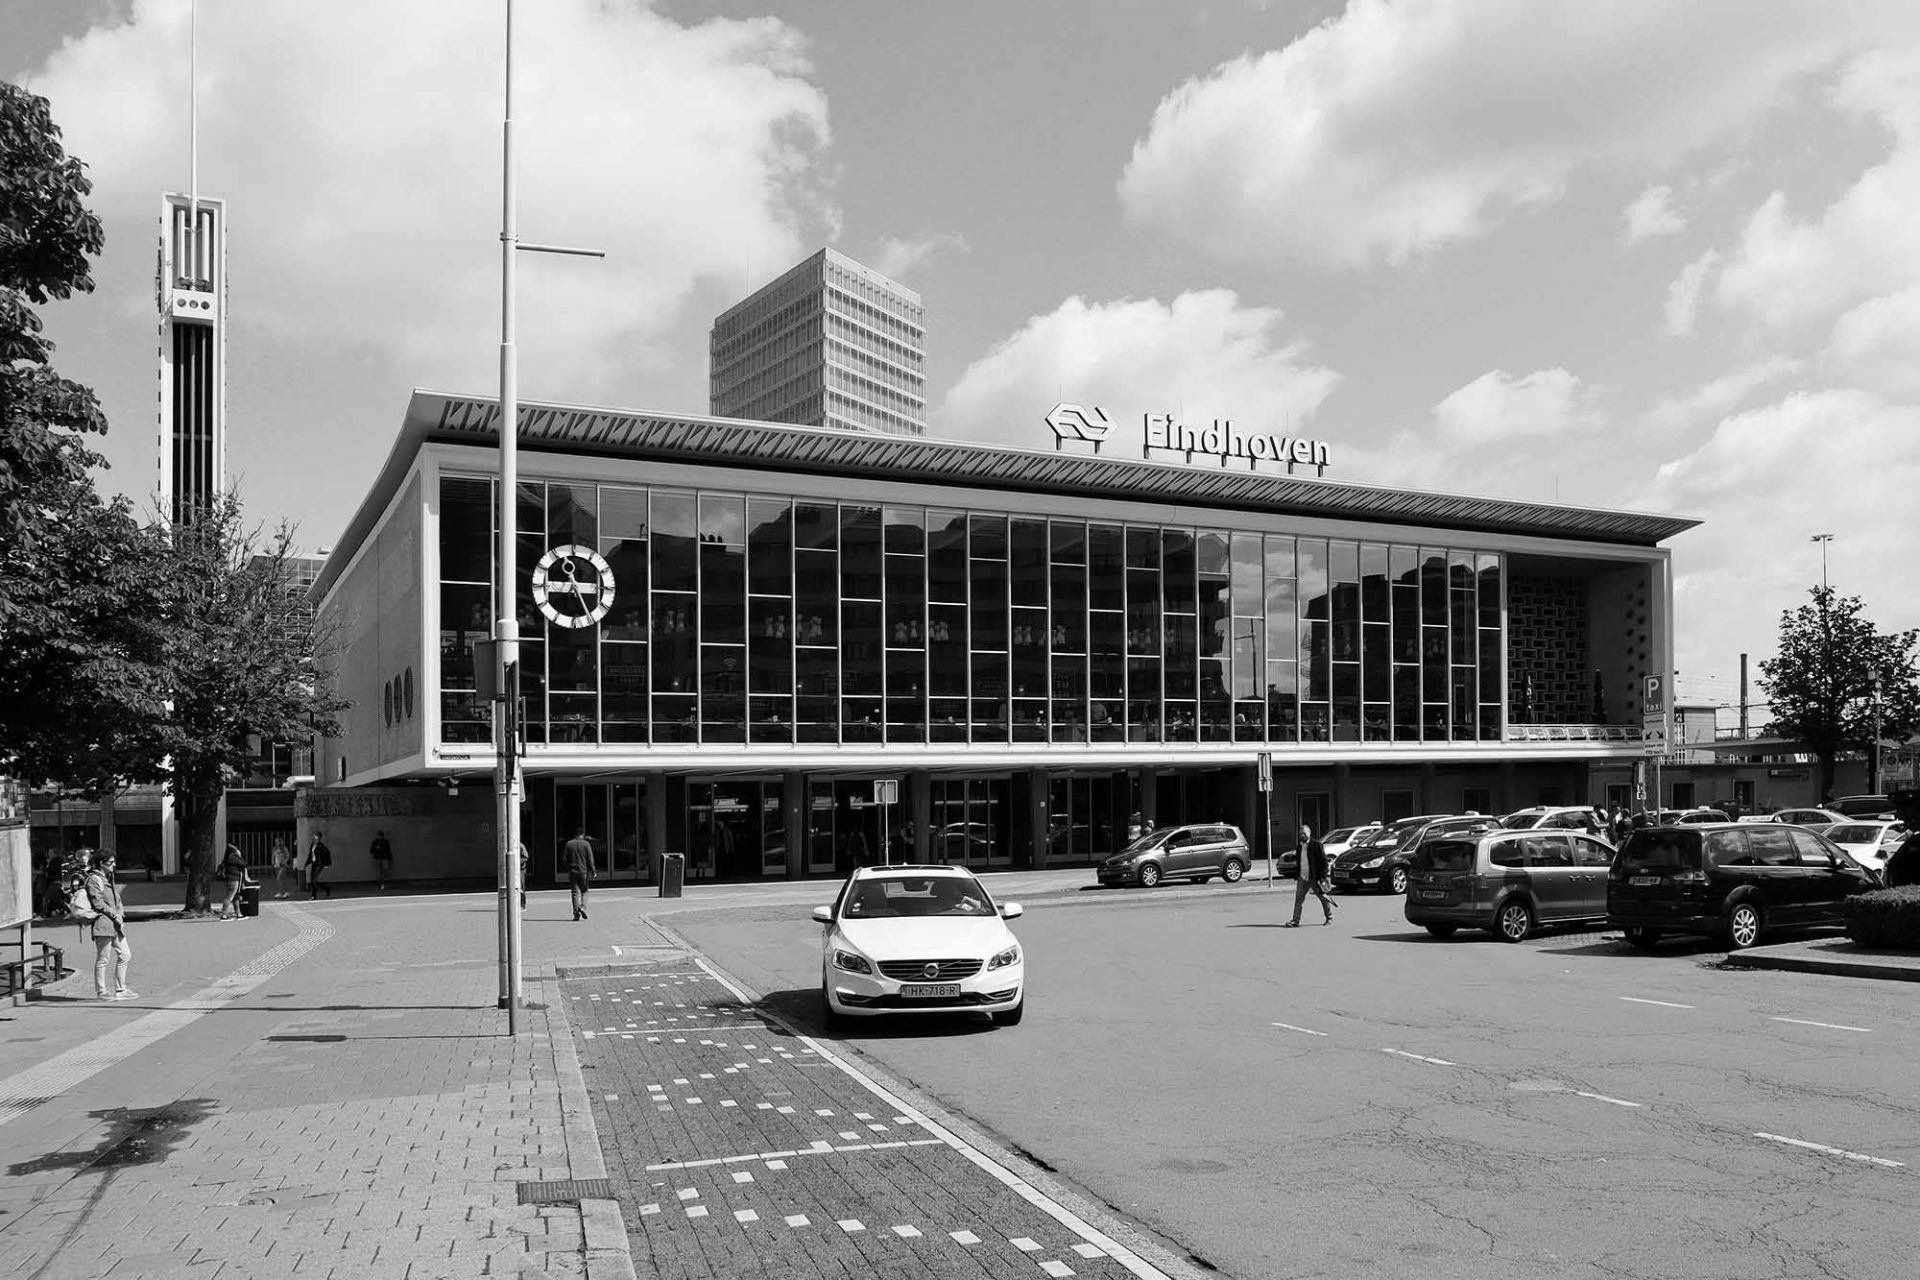 Bahnhof. Der Eindhovener Bahnhof entstand 1956 nach Plänen von Koen van der Gaast. Ein Philips-Radio war sein Vorbild.